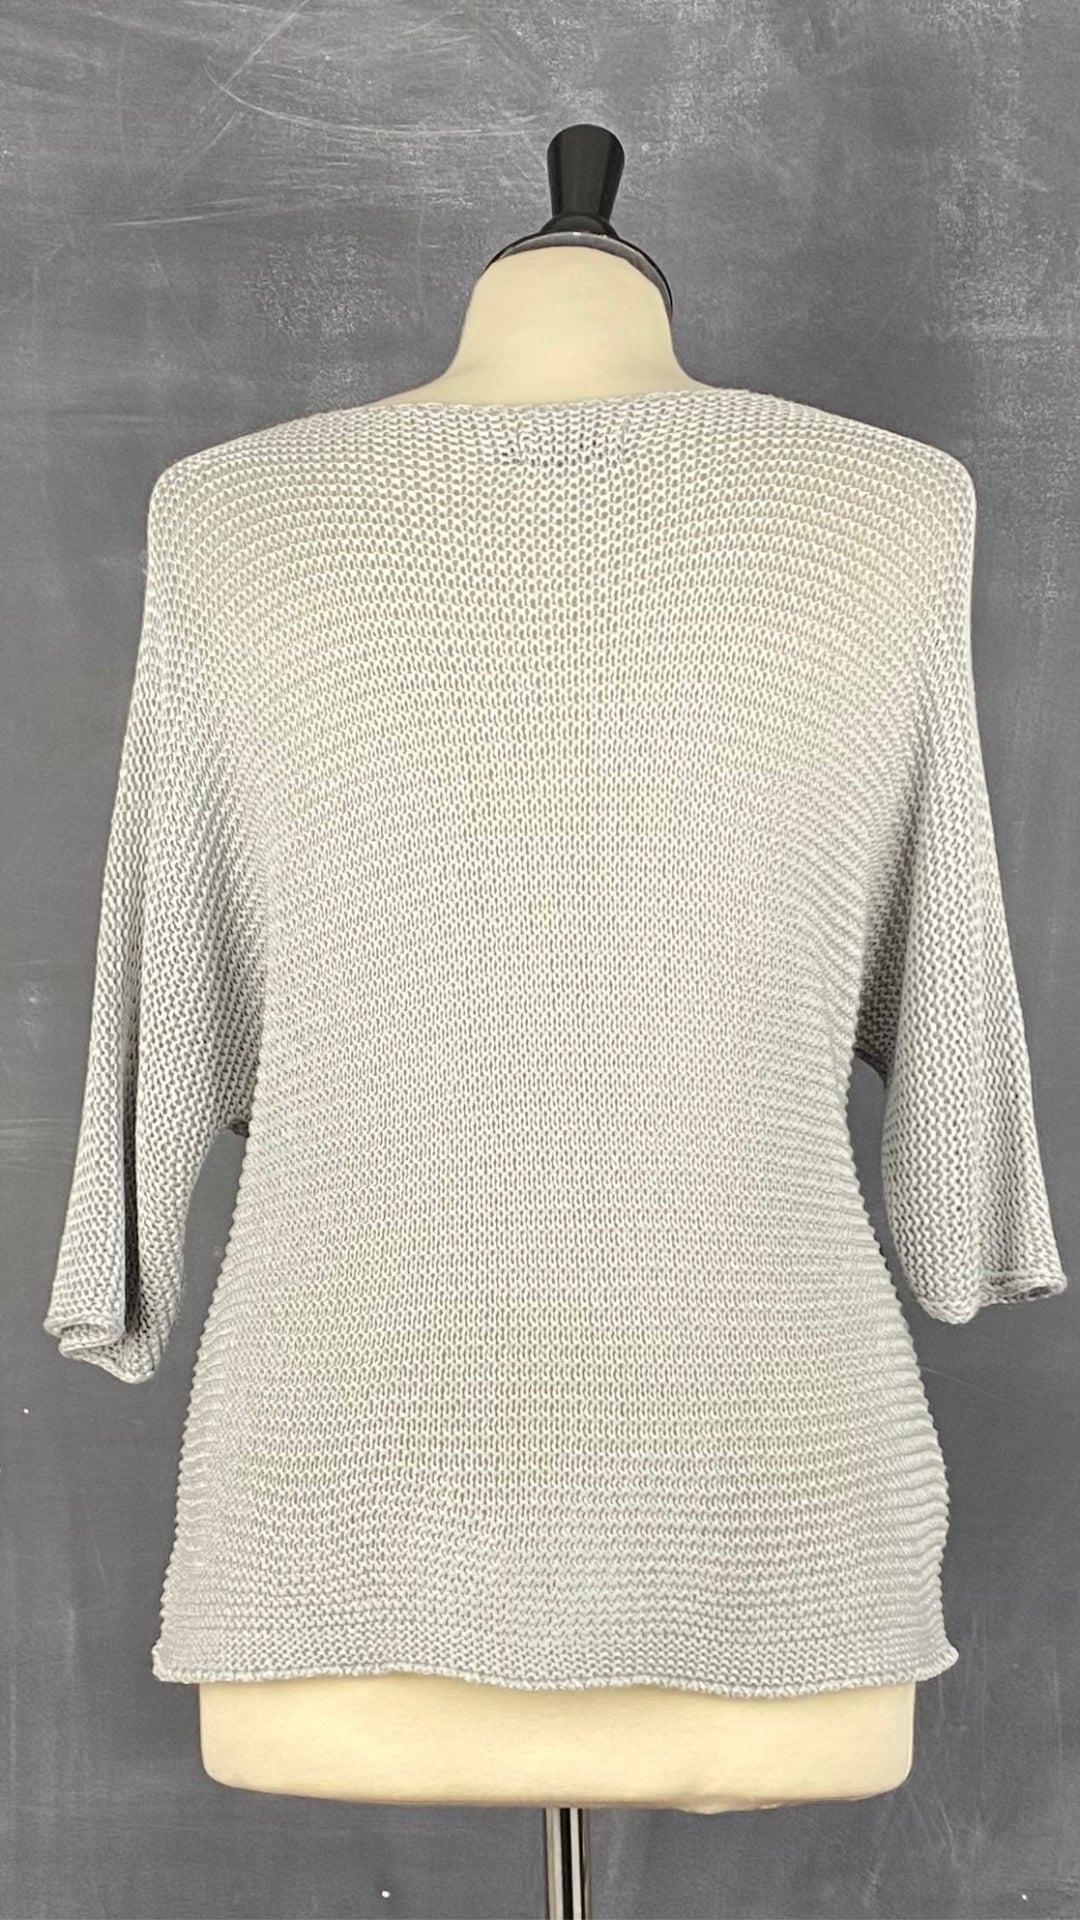 Chandail en tricot ajouré gris M Made in Italy, taille medium. Vue de dos.